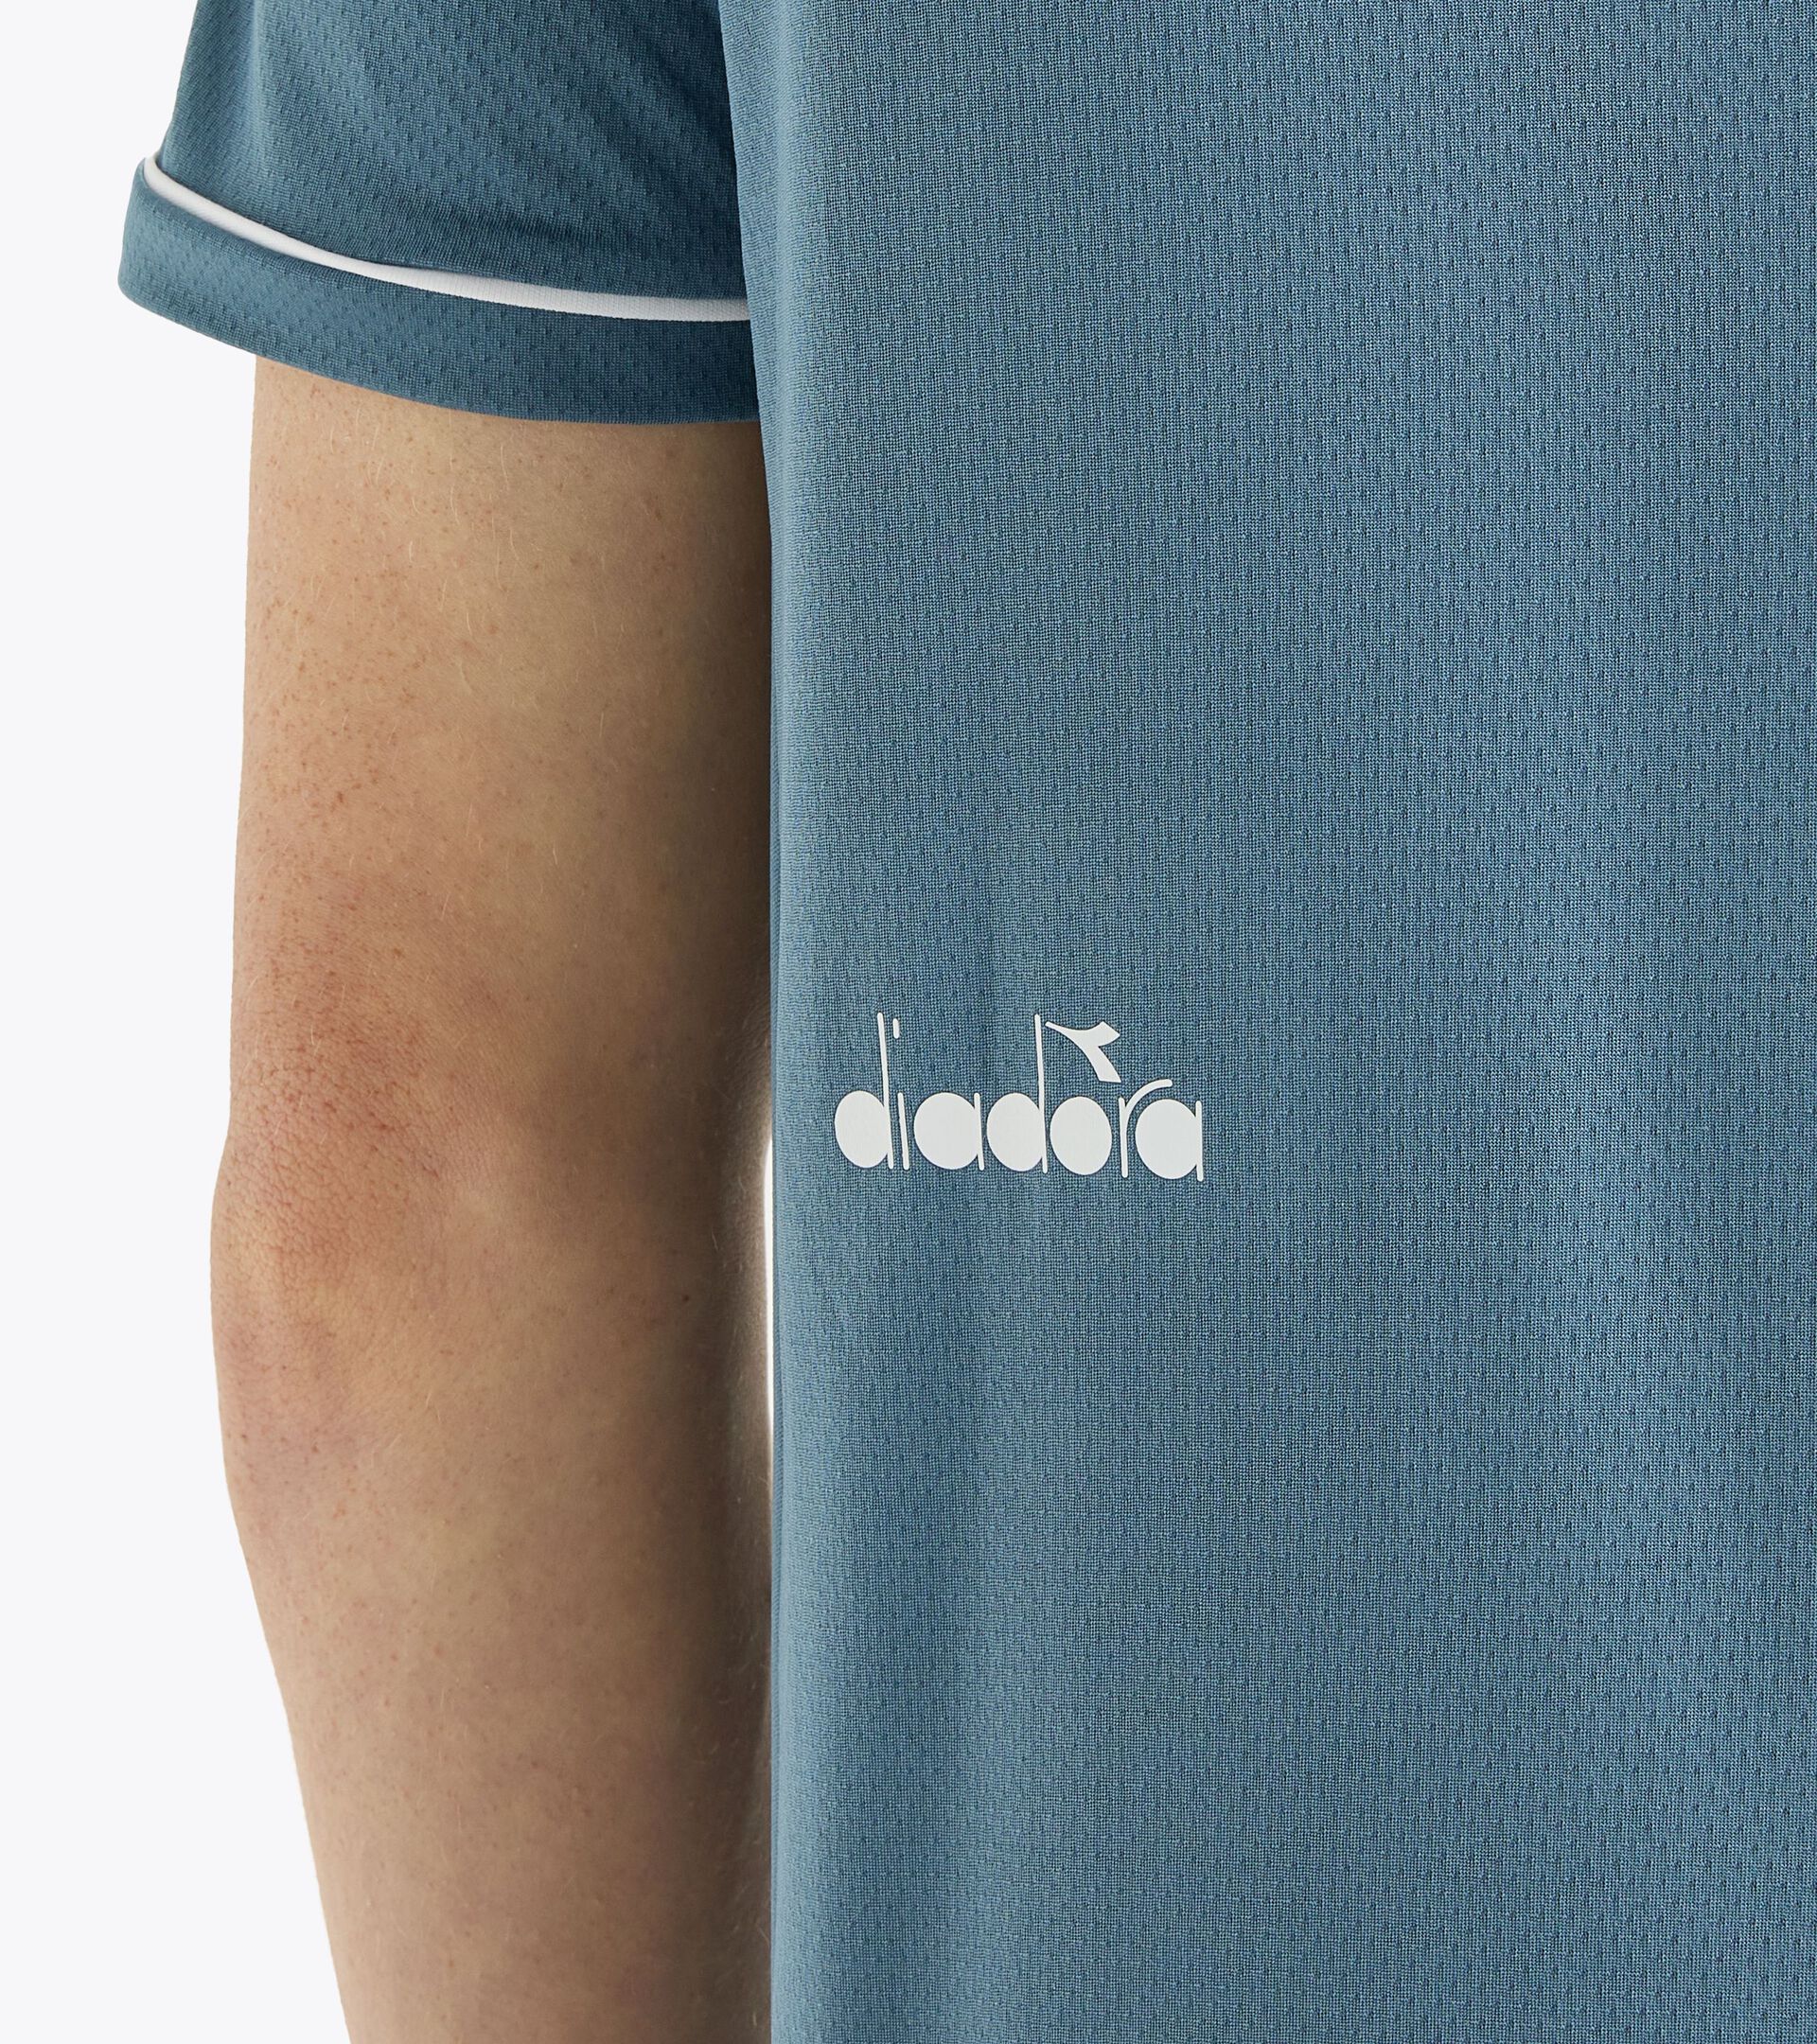 T-shirt de tennis - Homme SS T-SHIRT TENNIS OCEANVIEW - Diadora